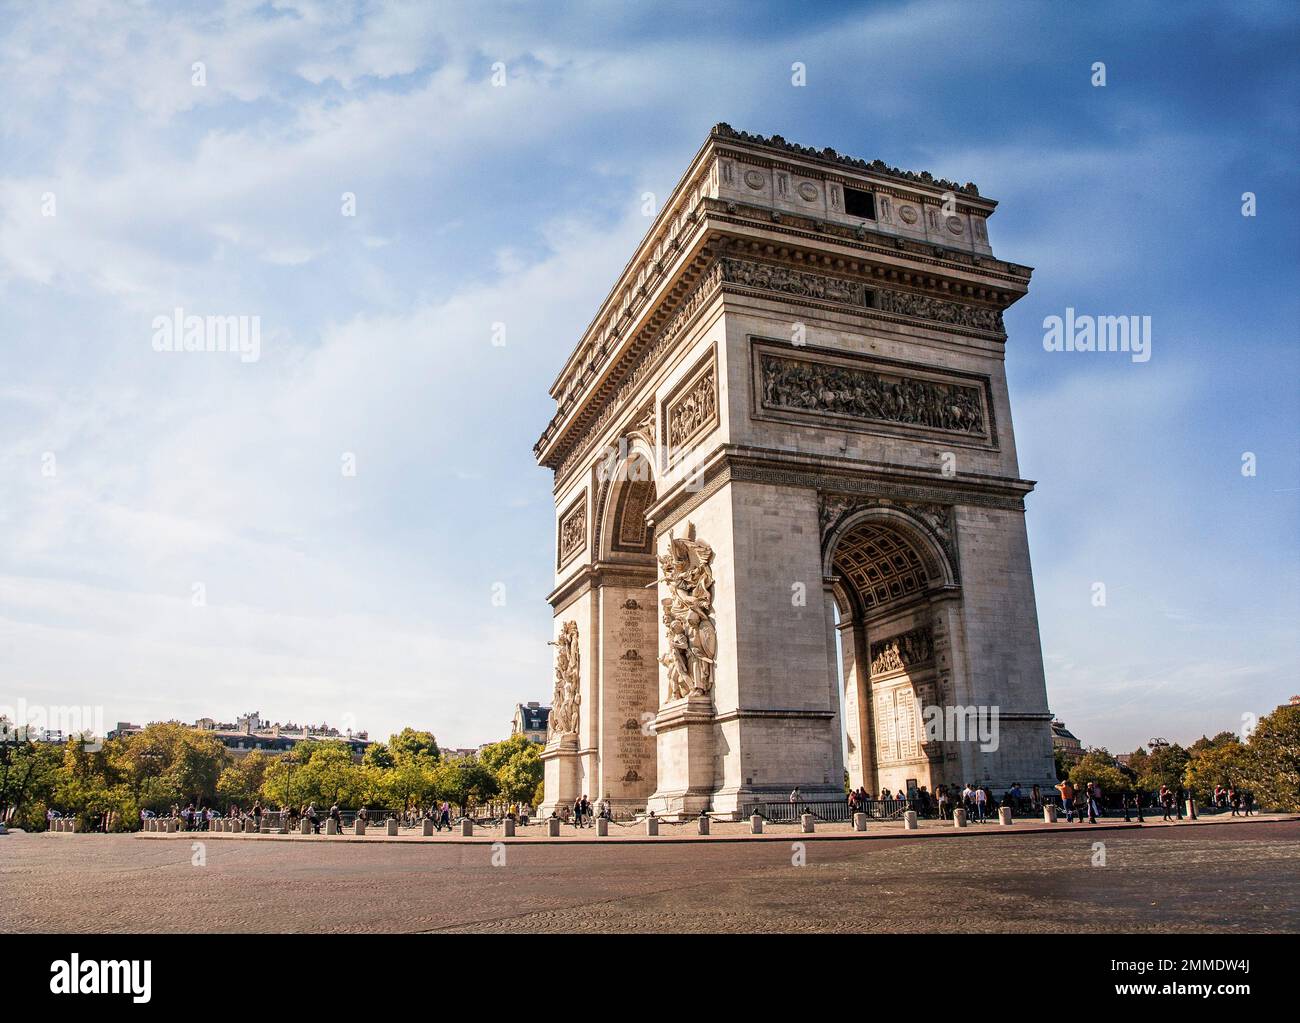 The Arc de Triomphe de l'Étoile rises proudly at the western end of the Champs-Élysées in Paris, France. Stock Photo